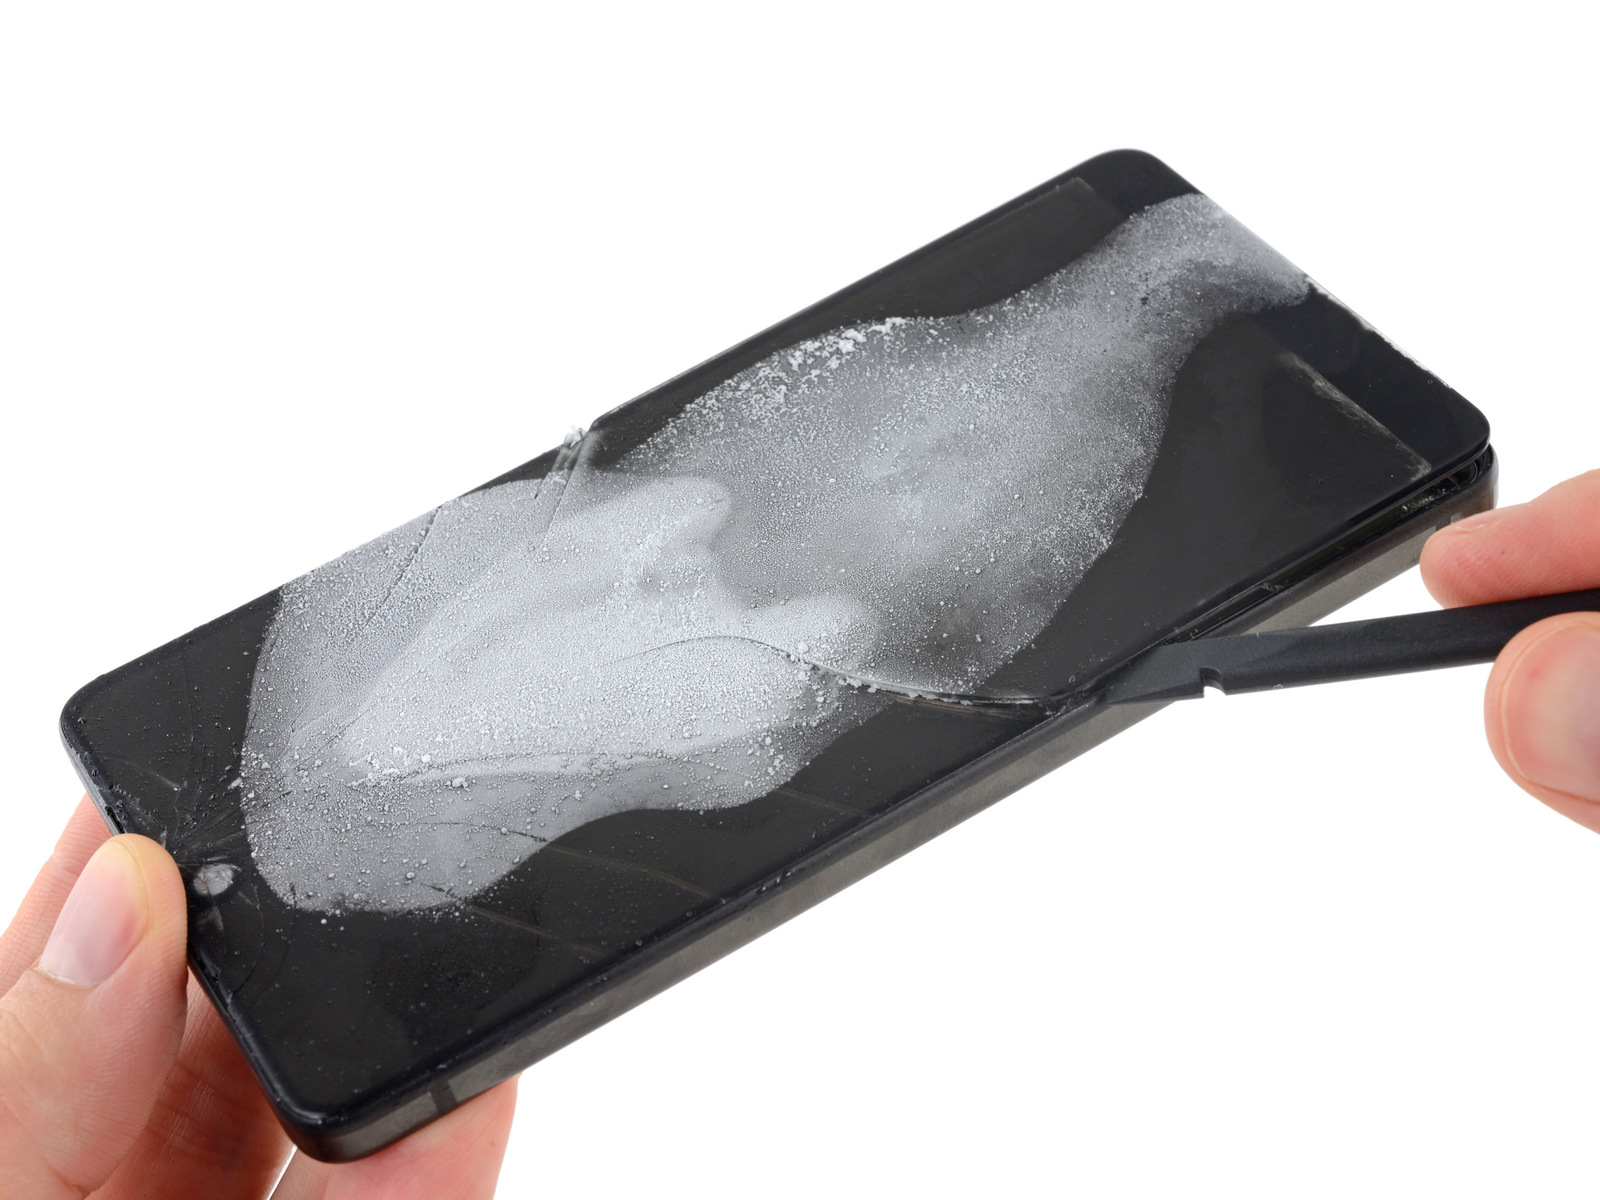 Телефон от создателя Android получил 1 балл из 10 по шкале ремонтопригодности iFixit - 3